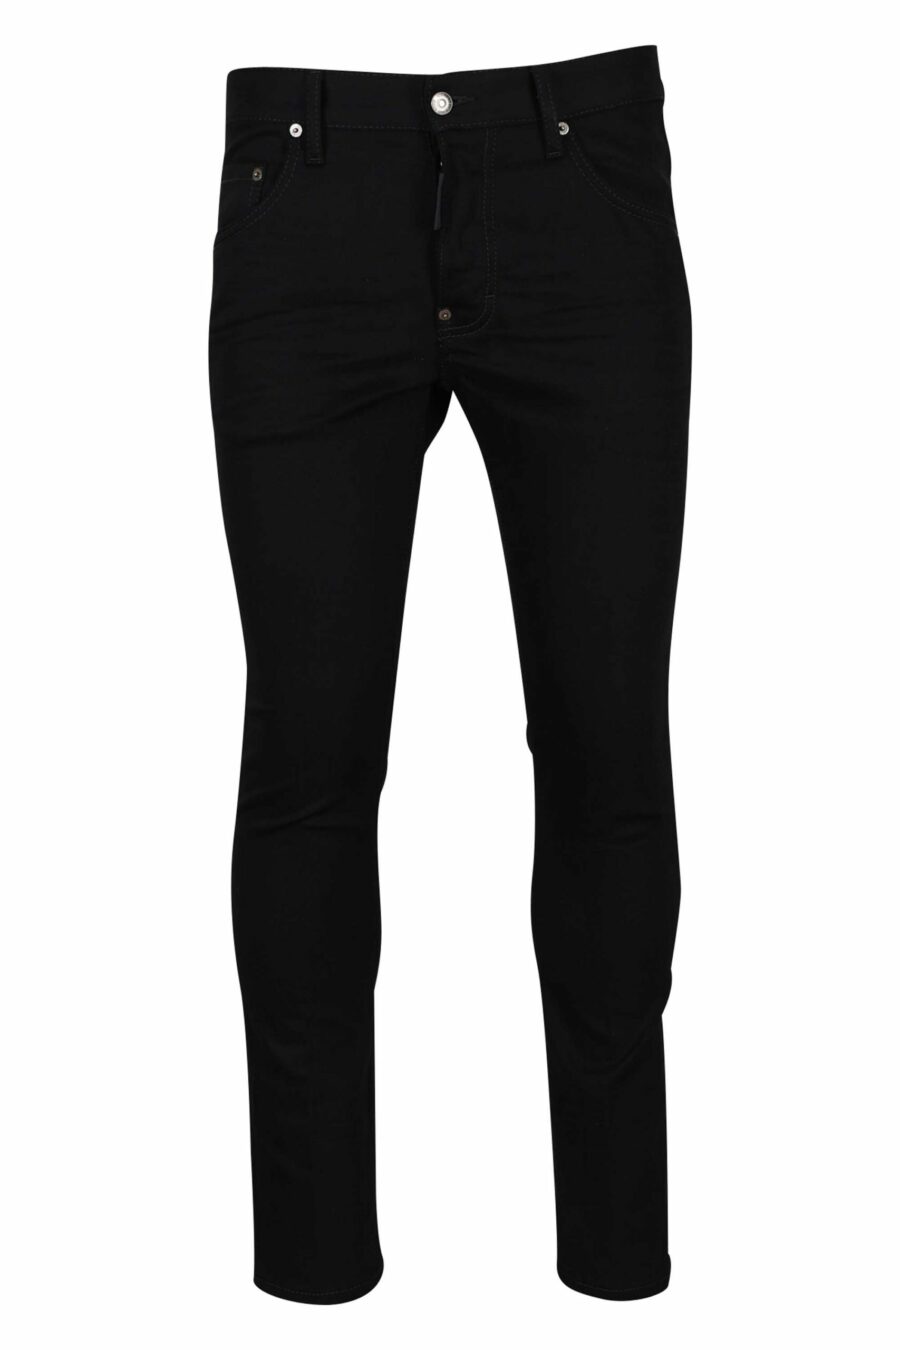 Black "skater jean" jeans - 8054148284022 scaled